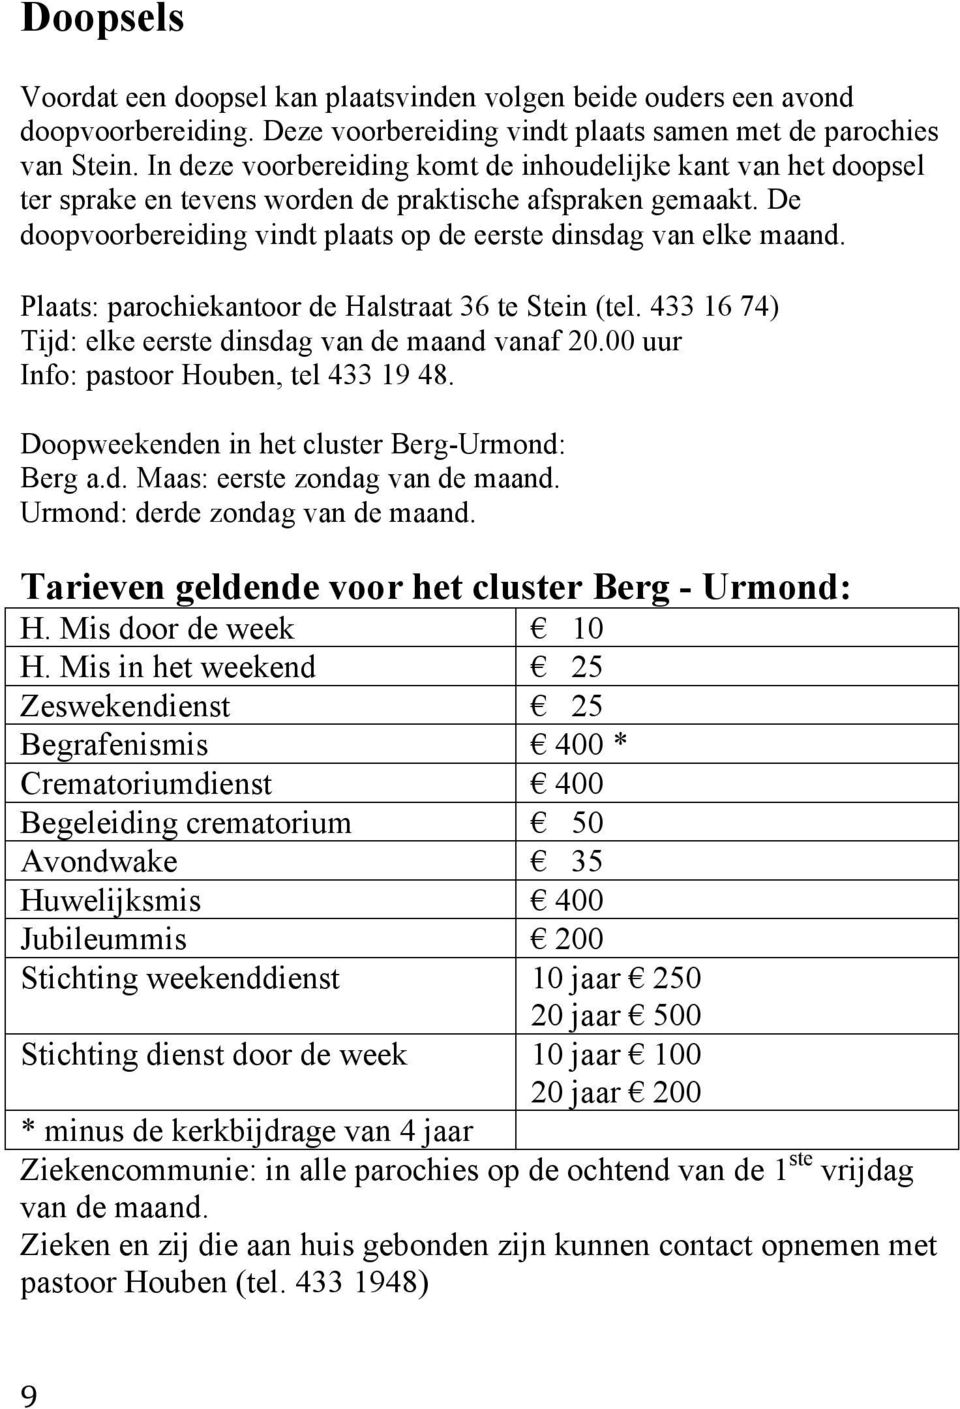 Plaats: parochiekantoor de Halstraat 36 te Stein (tel. 433 16 74) Tijd: elke eerste dinsdag van de maand vanaf 20.00 uur Info: pastoor Houben, tel 433 19 48.